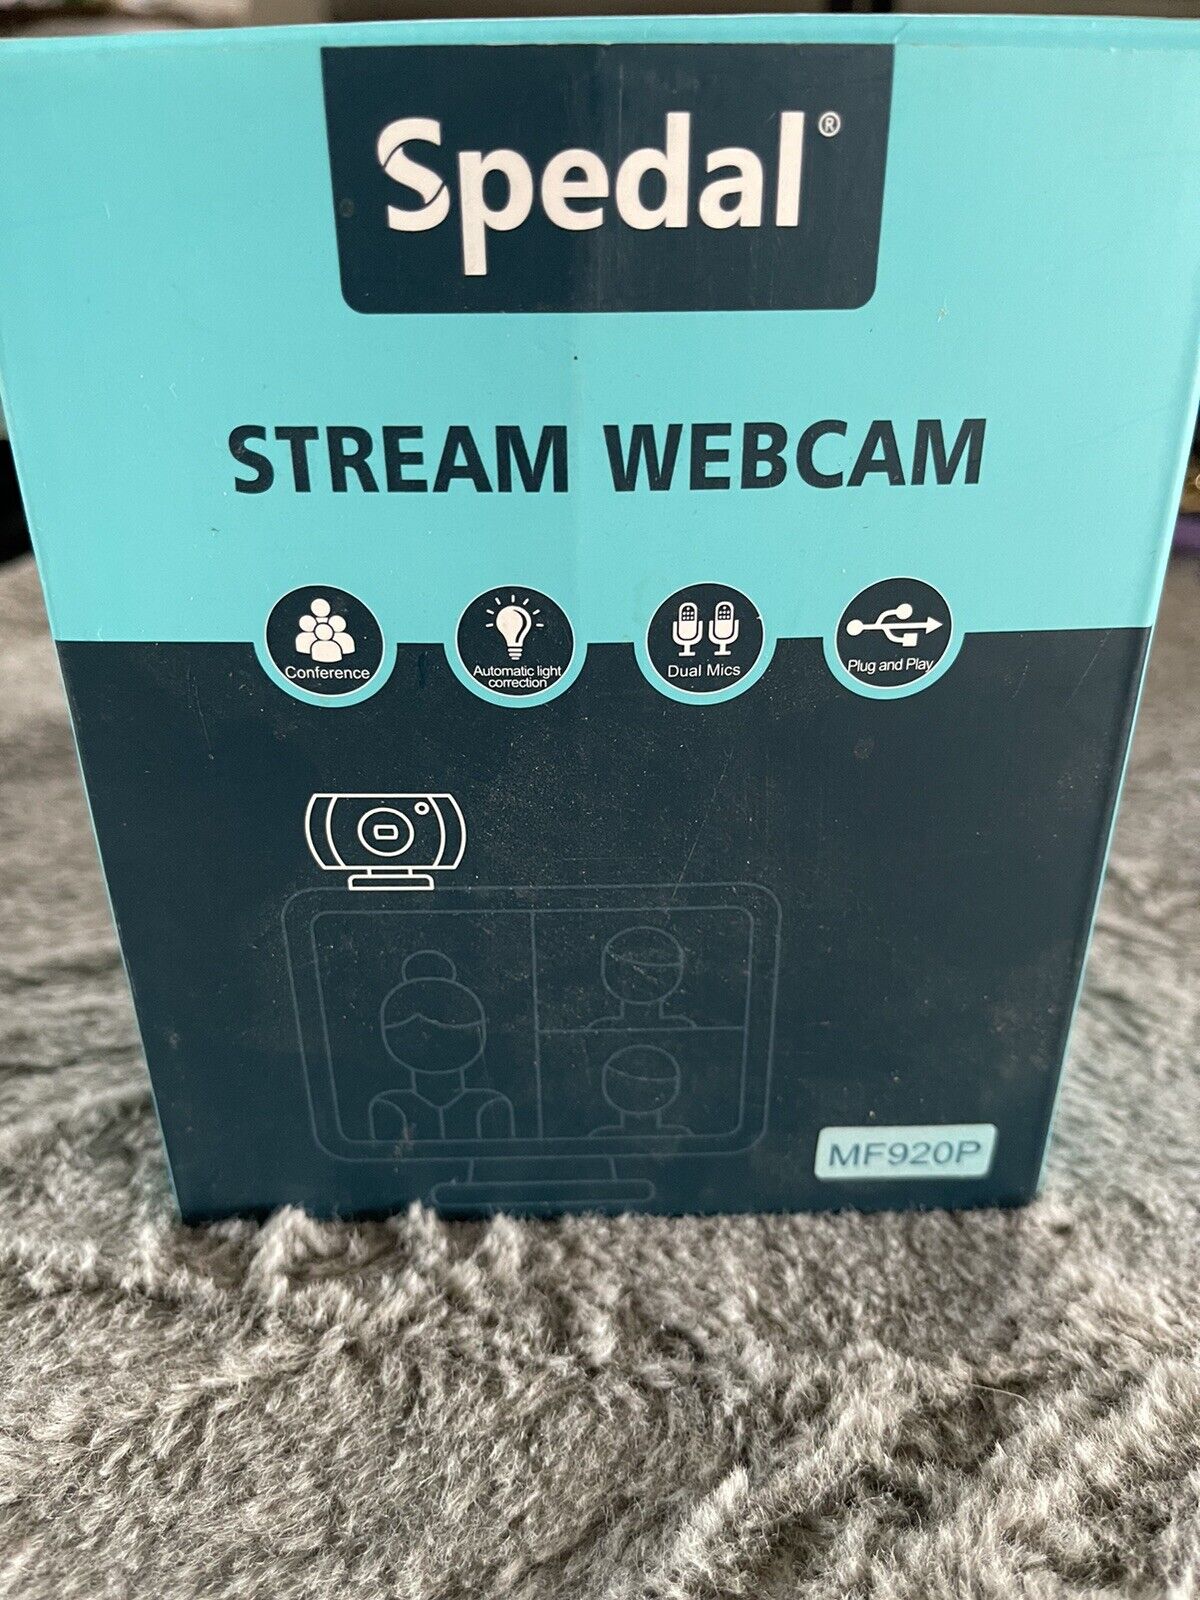 Spedal Stream Webcam Live Streaming Plug/Play MF920P